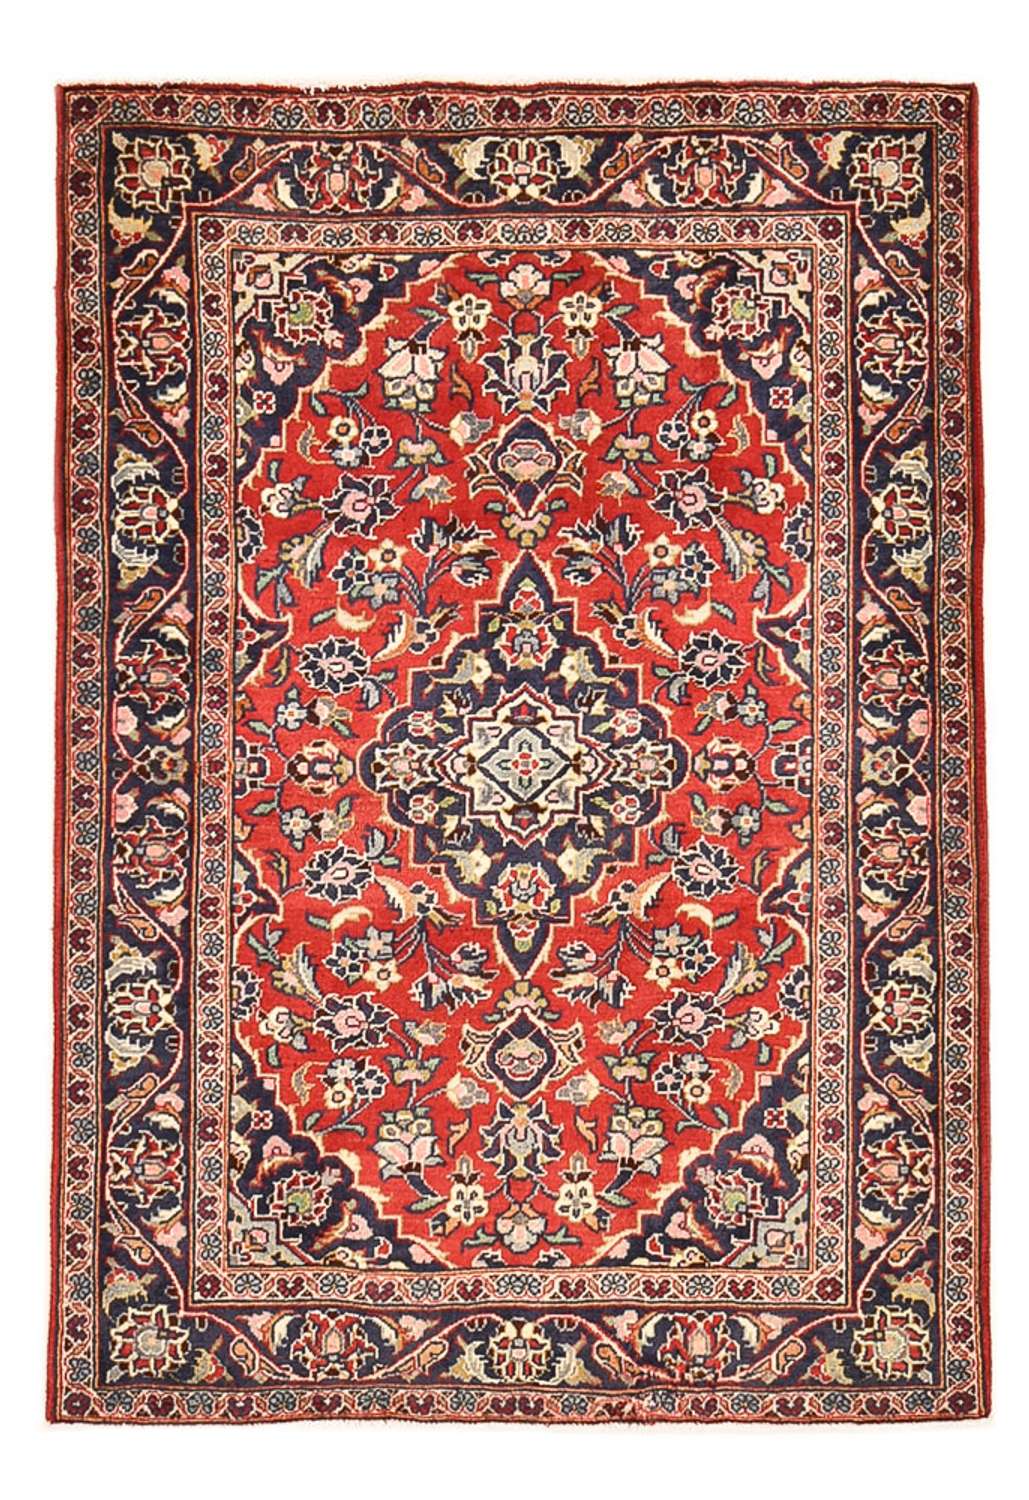 Dywan perski - Keshan - 150 x 97 cm - czerwony